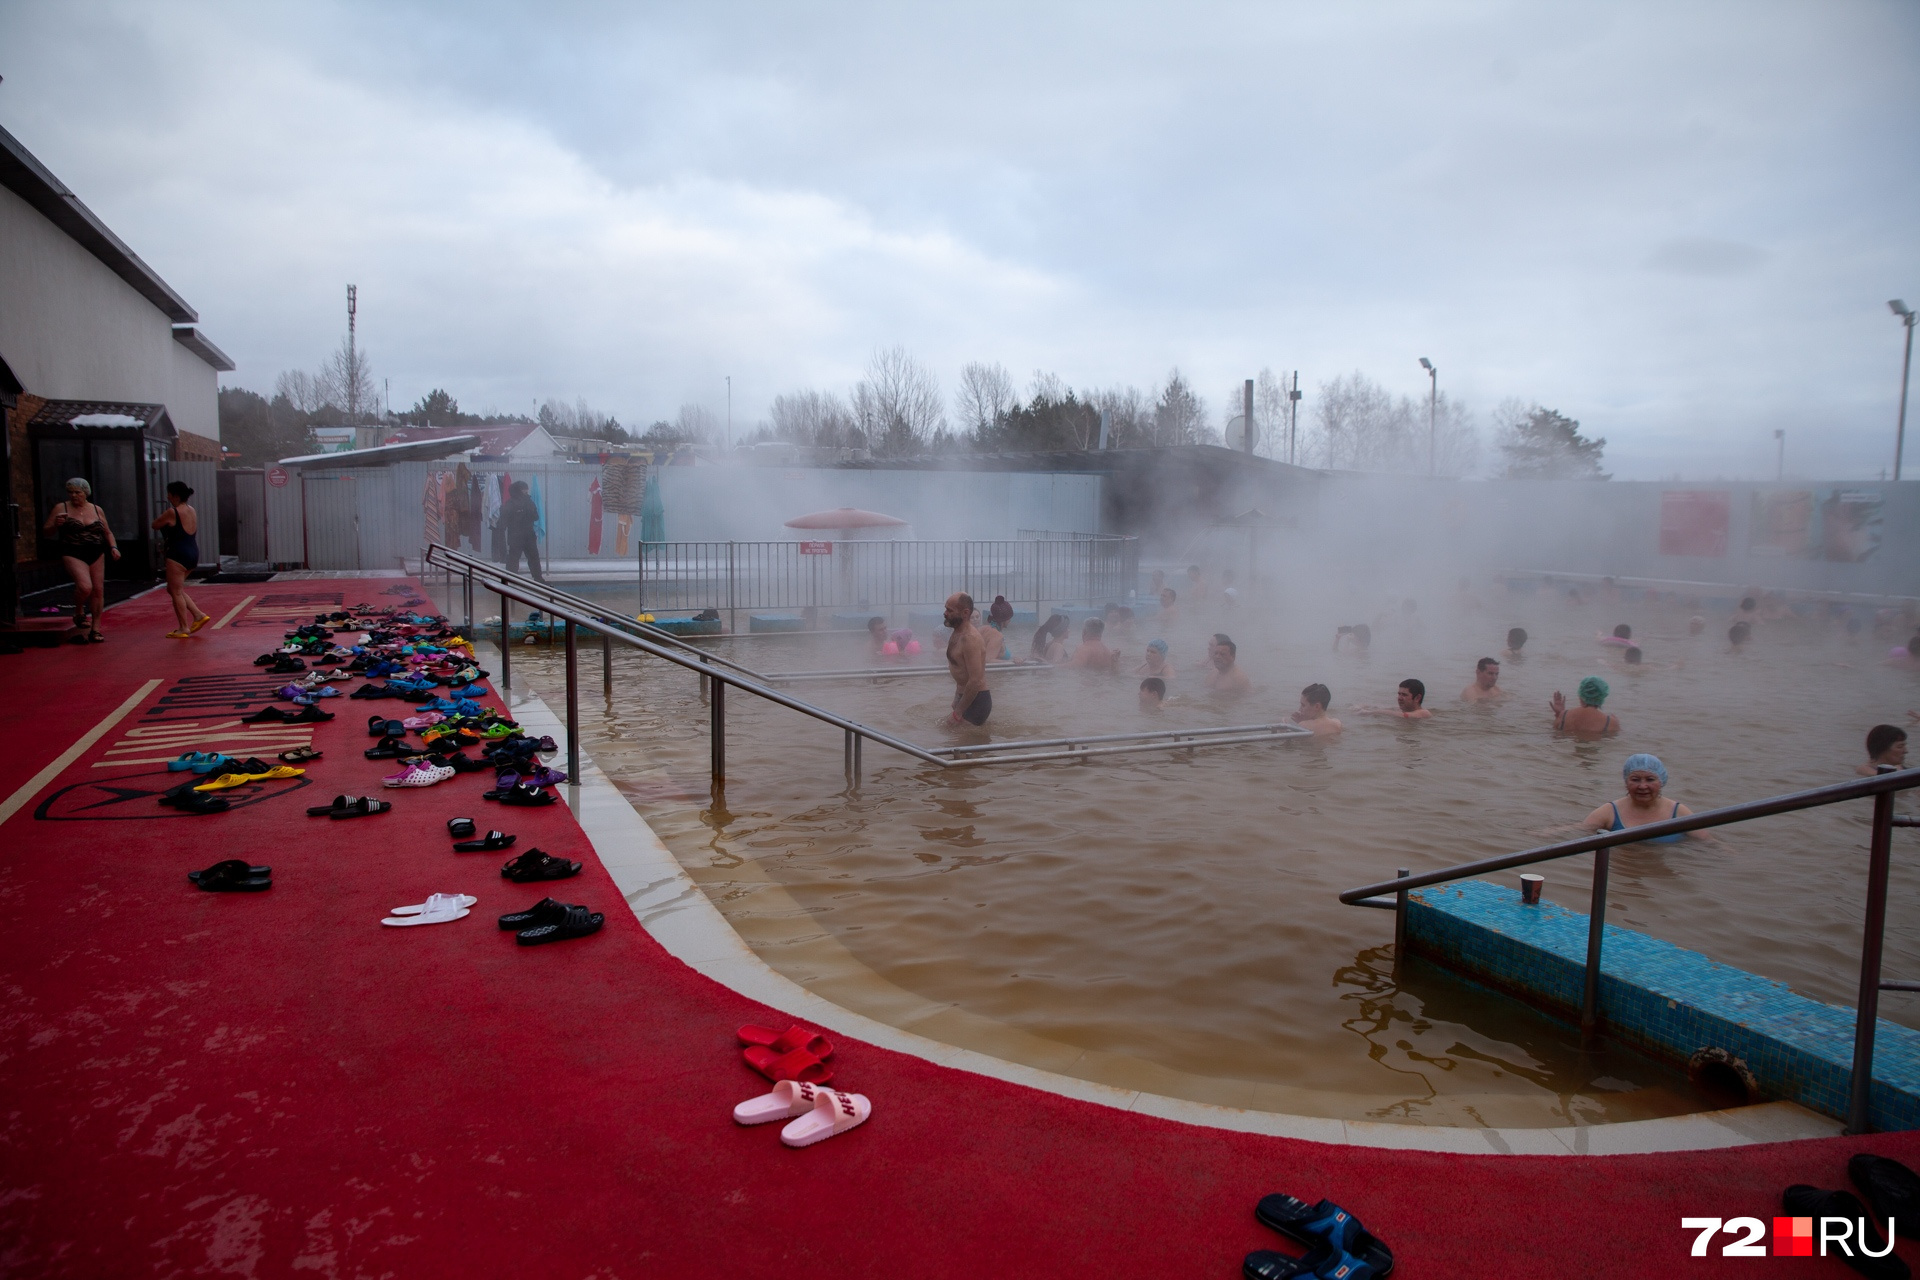 Горячие источники пока тюменцы используют по прямому назначению, в них так приятно купаться в холодное время года